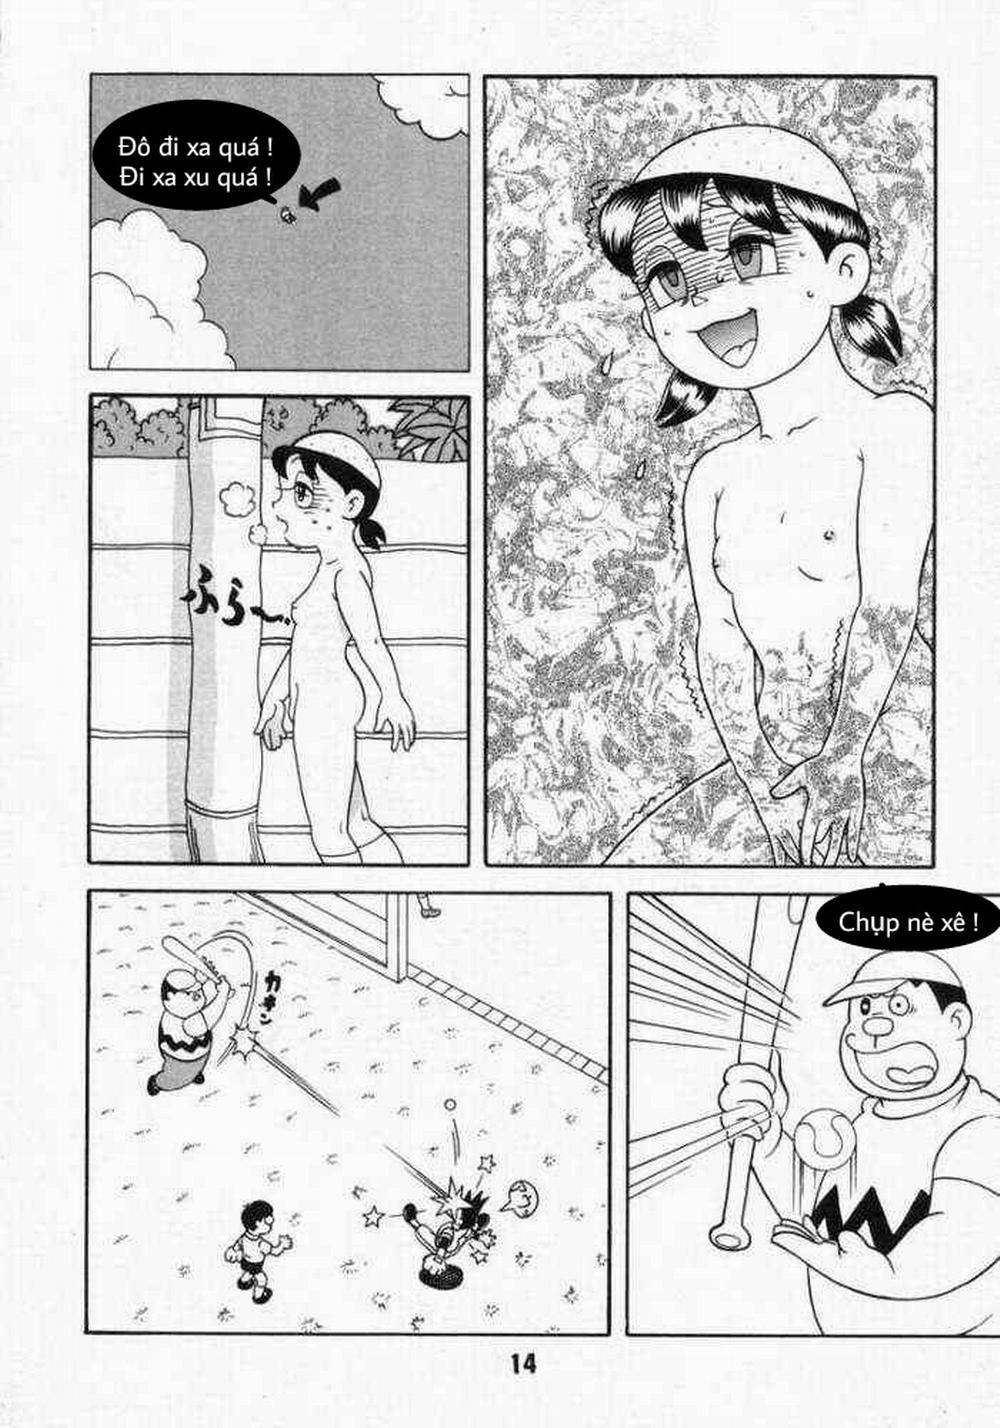 Tuyển Tập Doraemon Doujinshi 18+ Chương 10 Xuka v m t ng h nh Trang 12